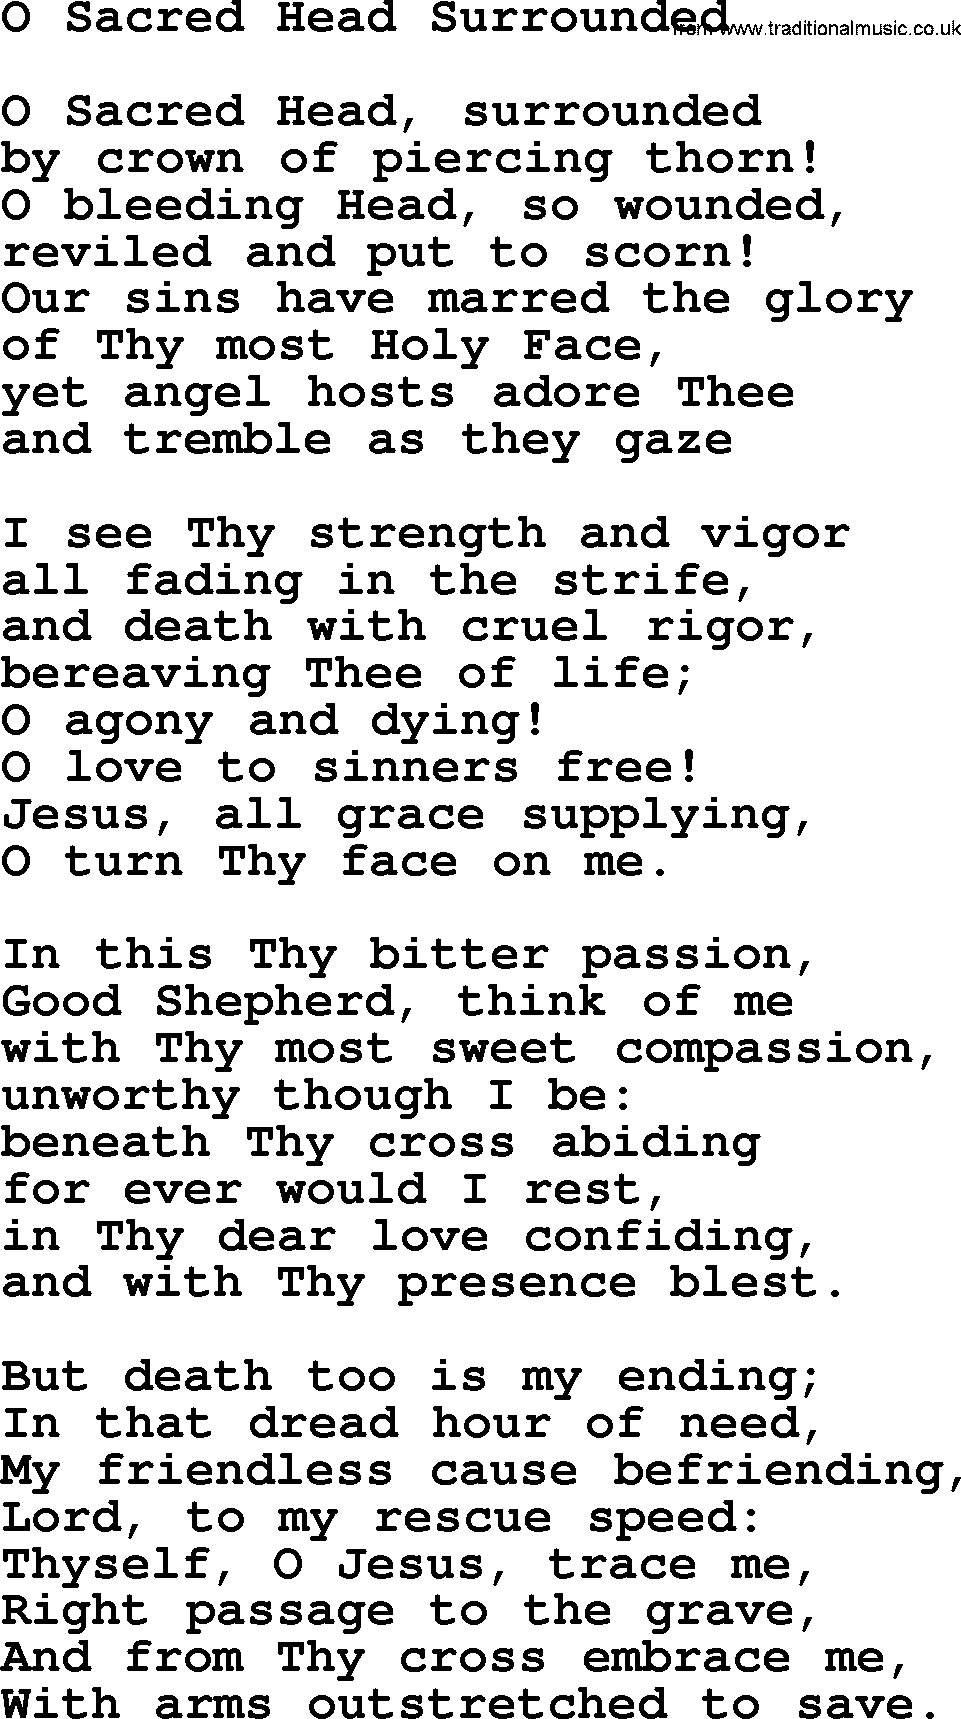 Catholic Hymn: O Sacred Head Surrounded lyrics with PDF